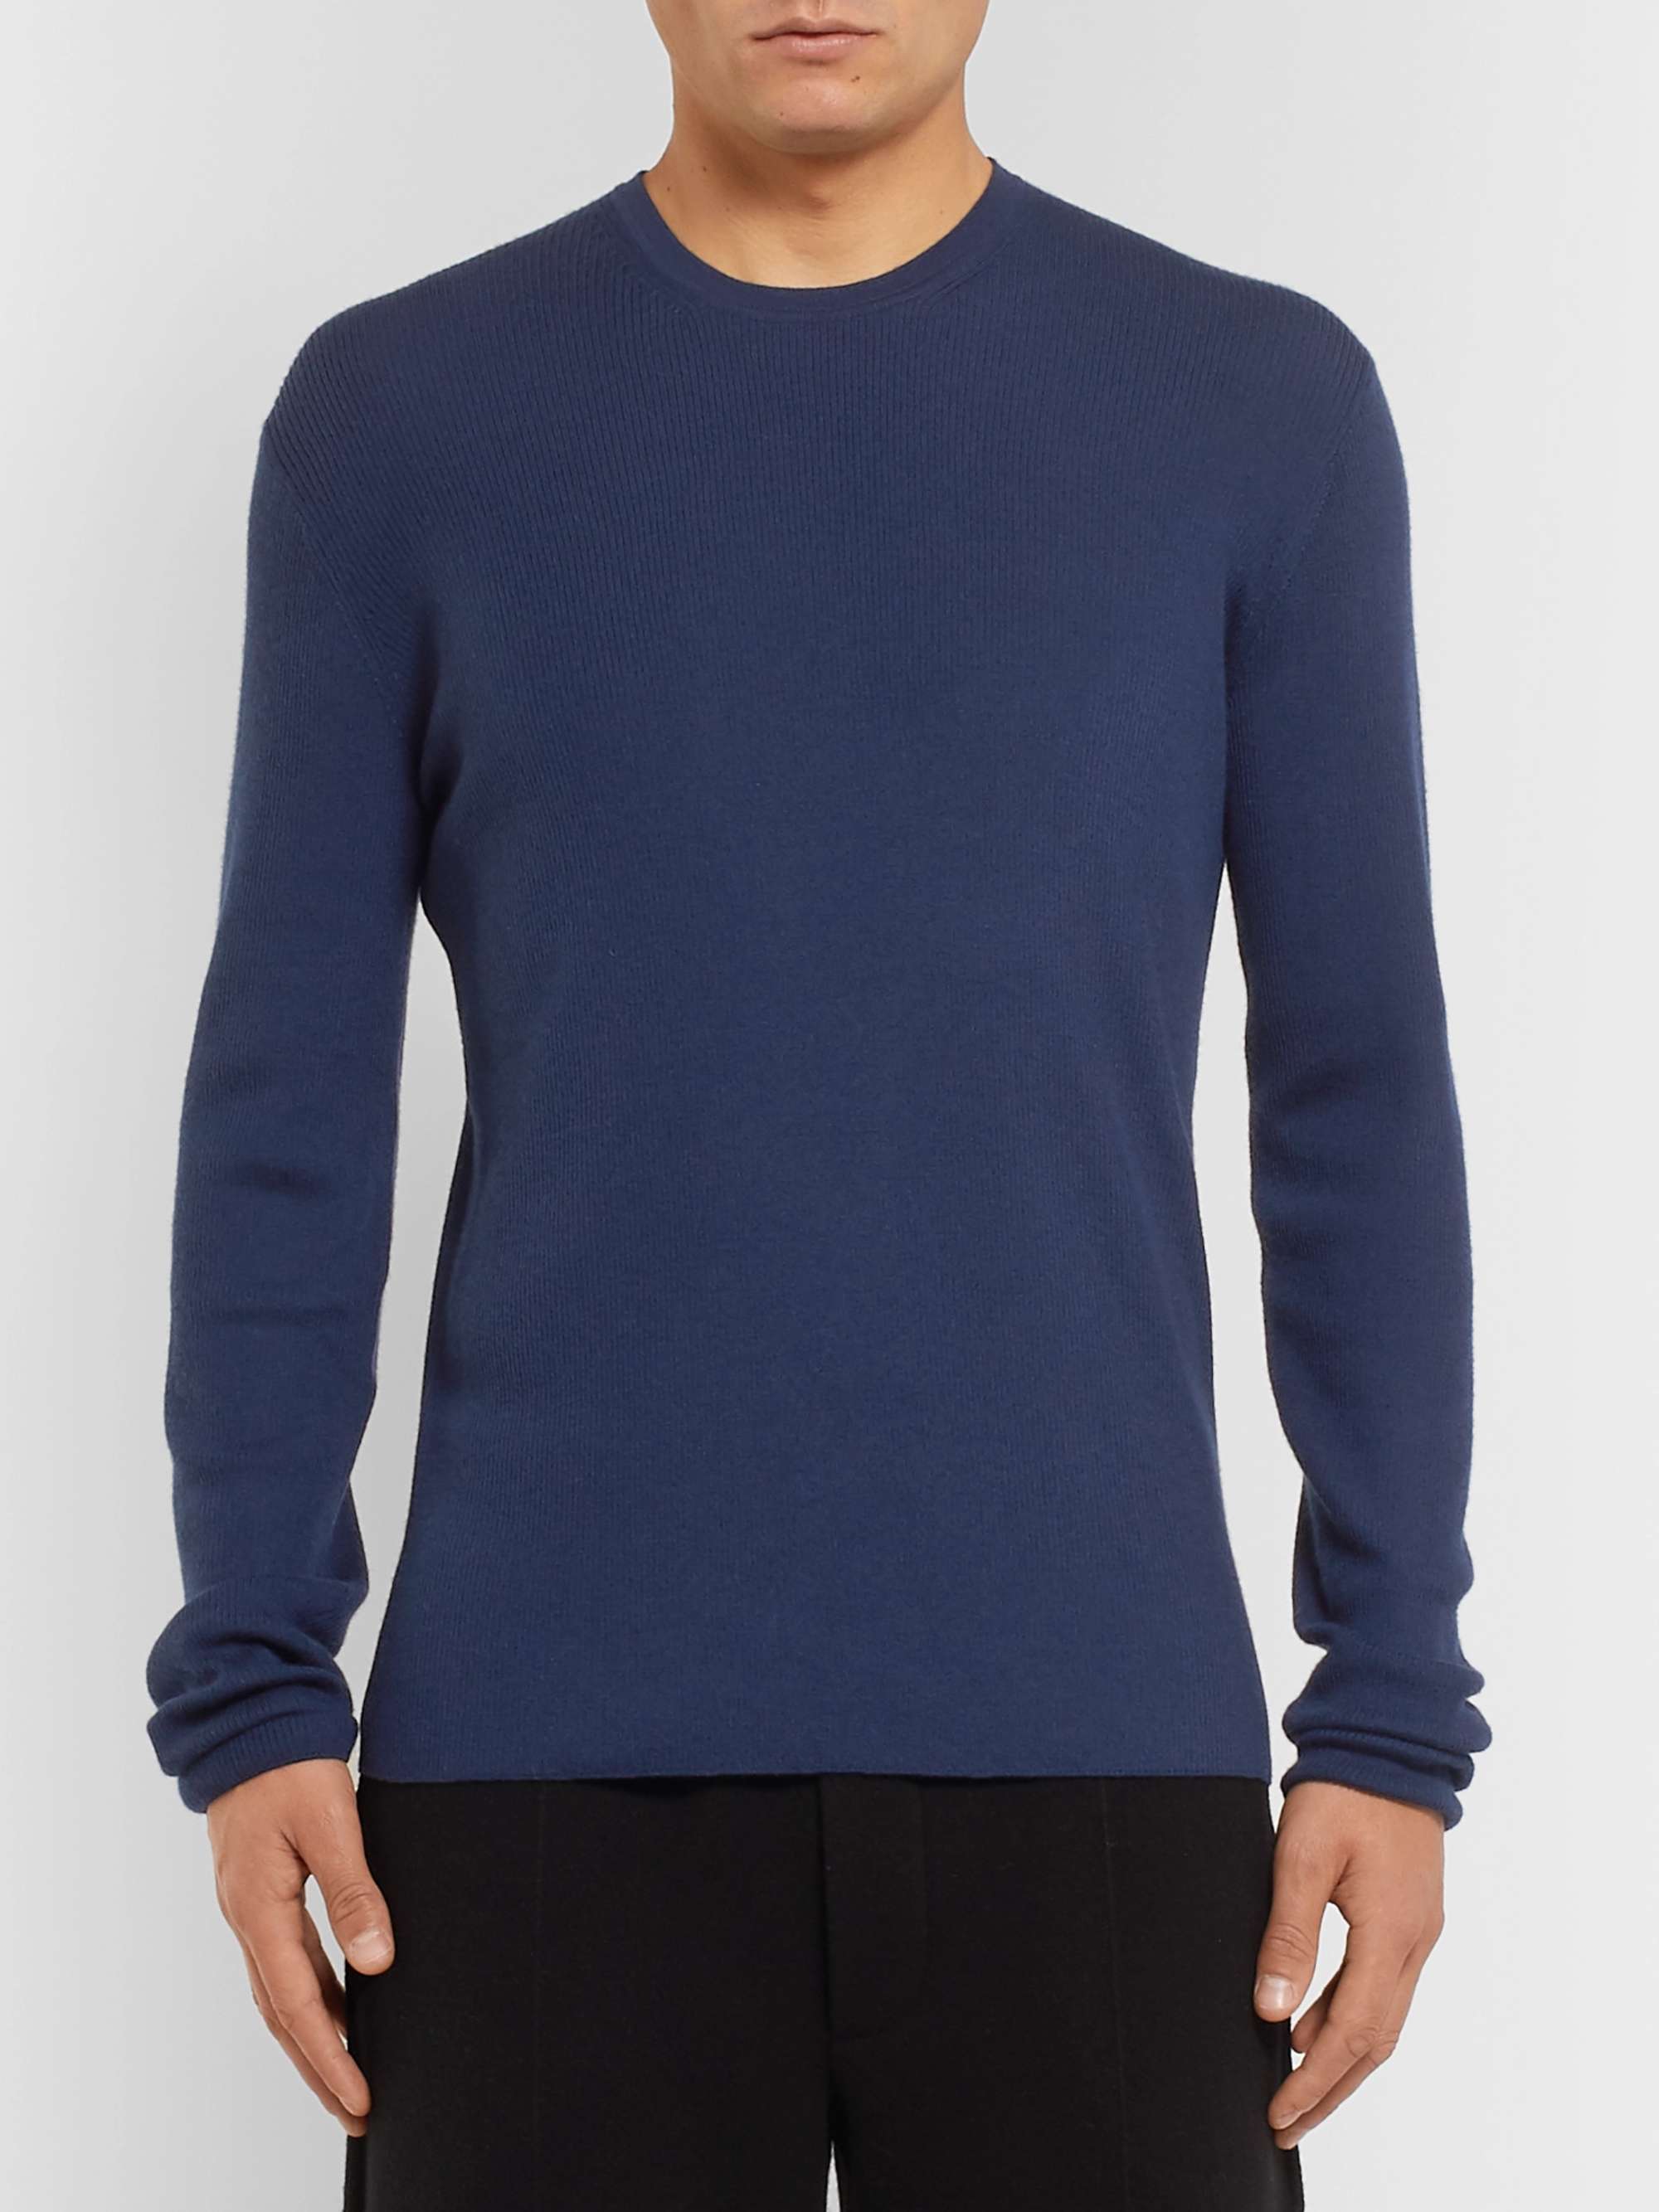 BERLUTI Cashmere Sweater for Men | MR PORTER